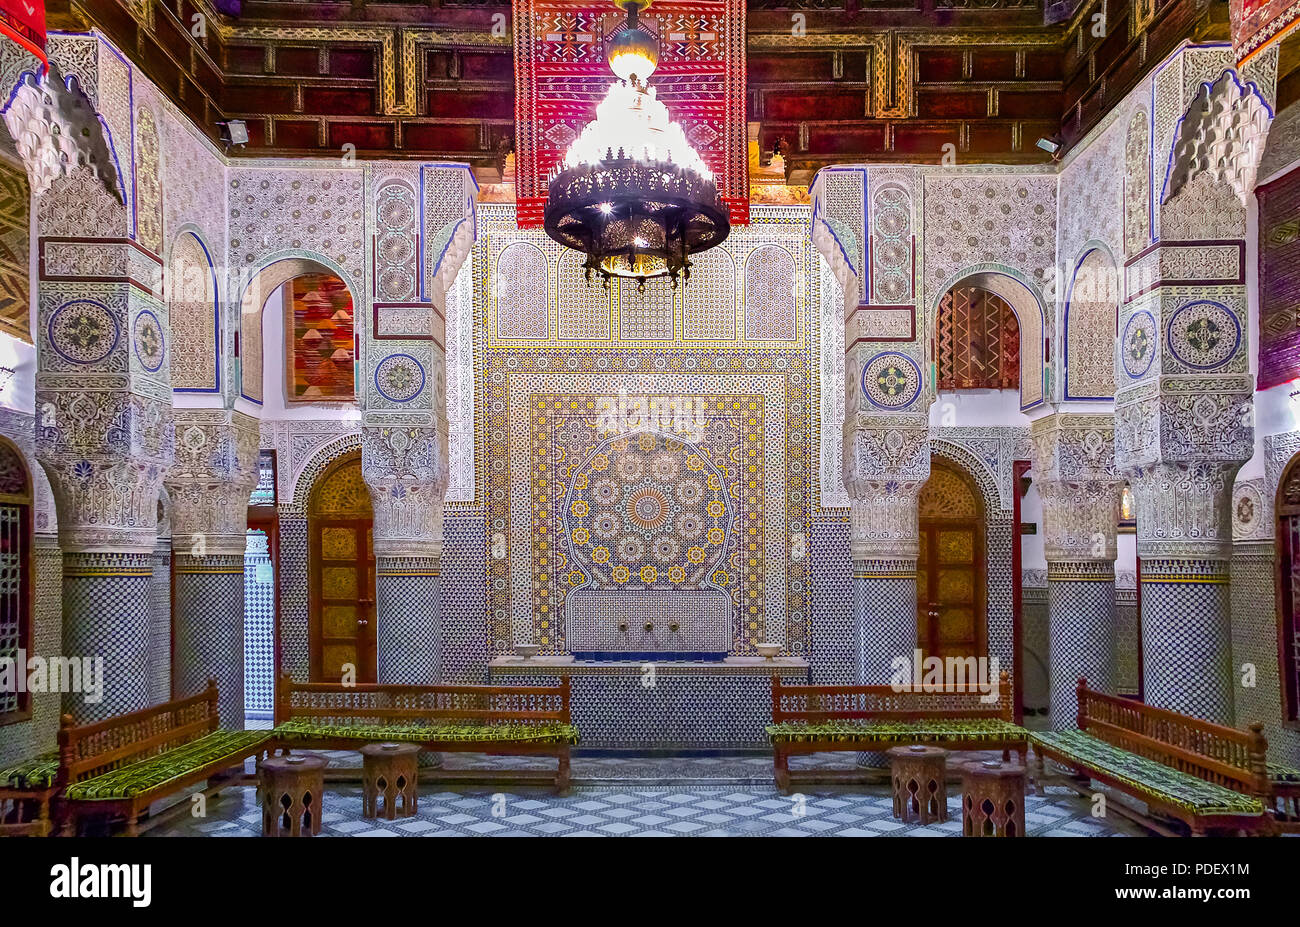 Fes, Maroc - 11 mai 2013 : cour intérieure décorée avec des mosaïques et des sculptures en arabesque, avec divans traditionnel dans un riad marocain Banque D'Images